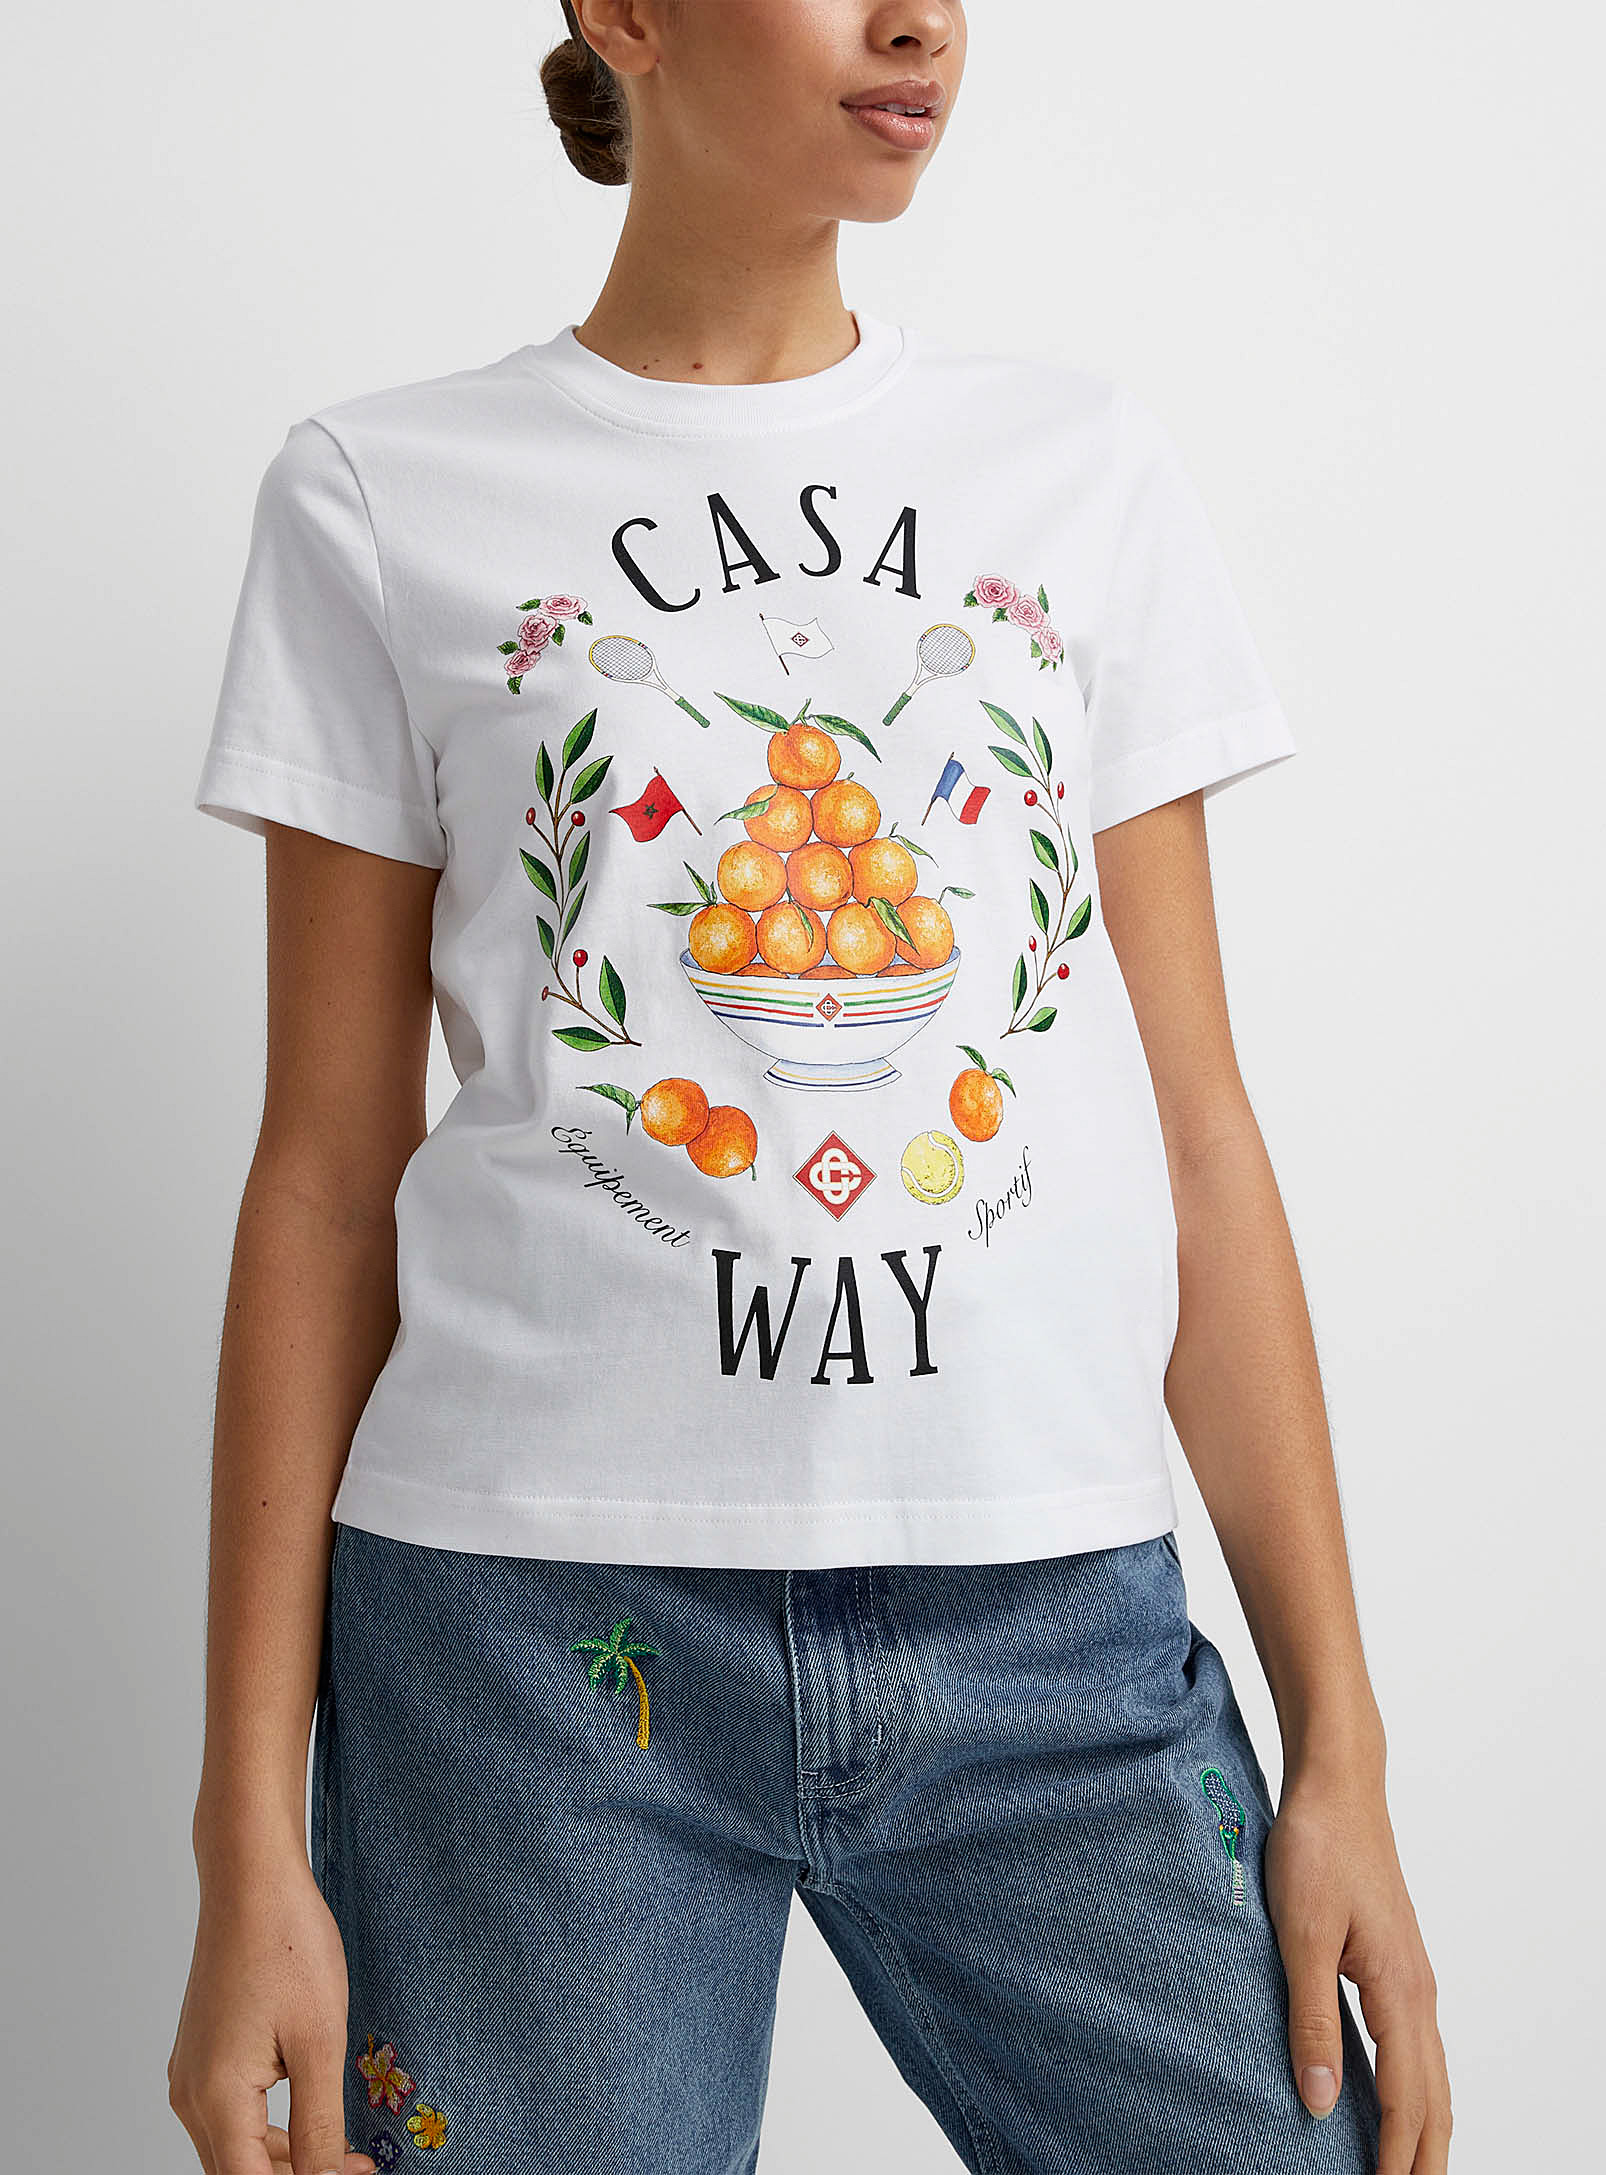 Casablanca - Le t-shirt Casa Way